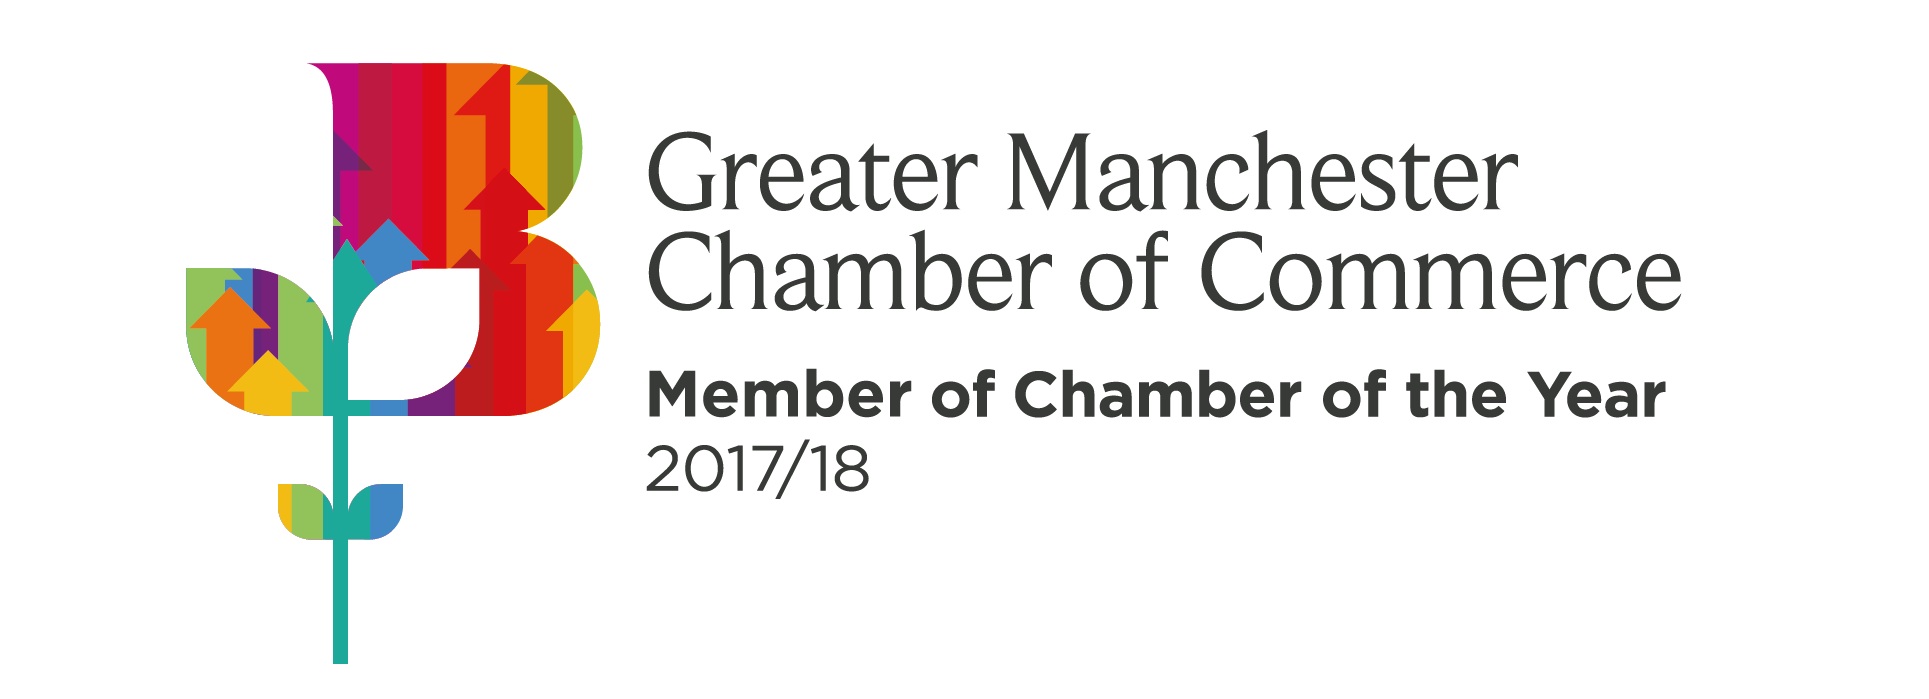 Greater Manchester Chamber of Commerce member logo